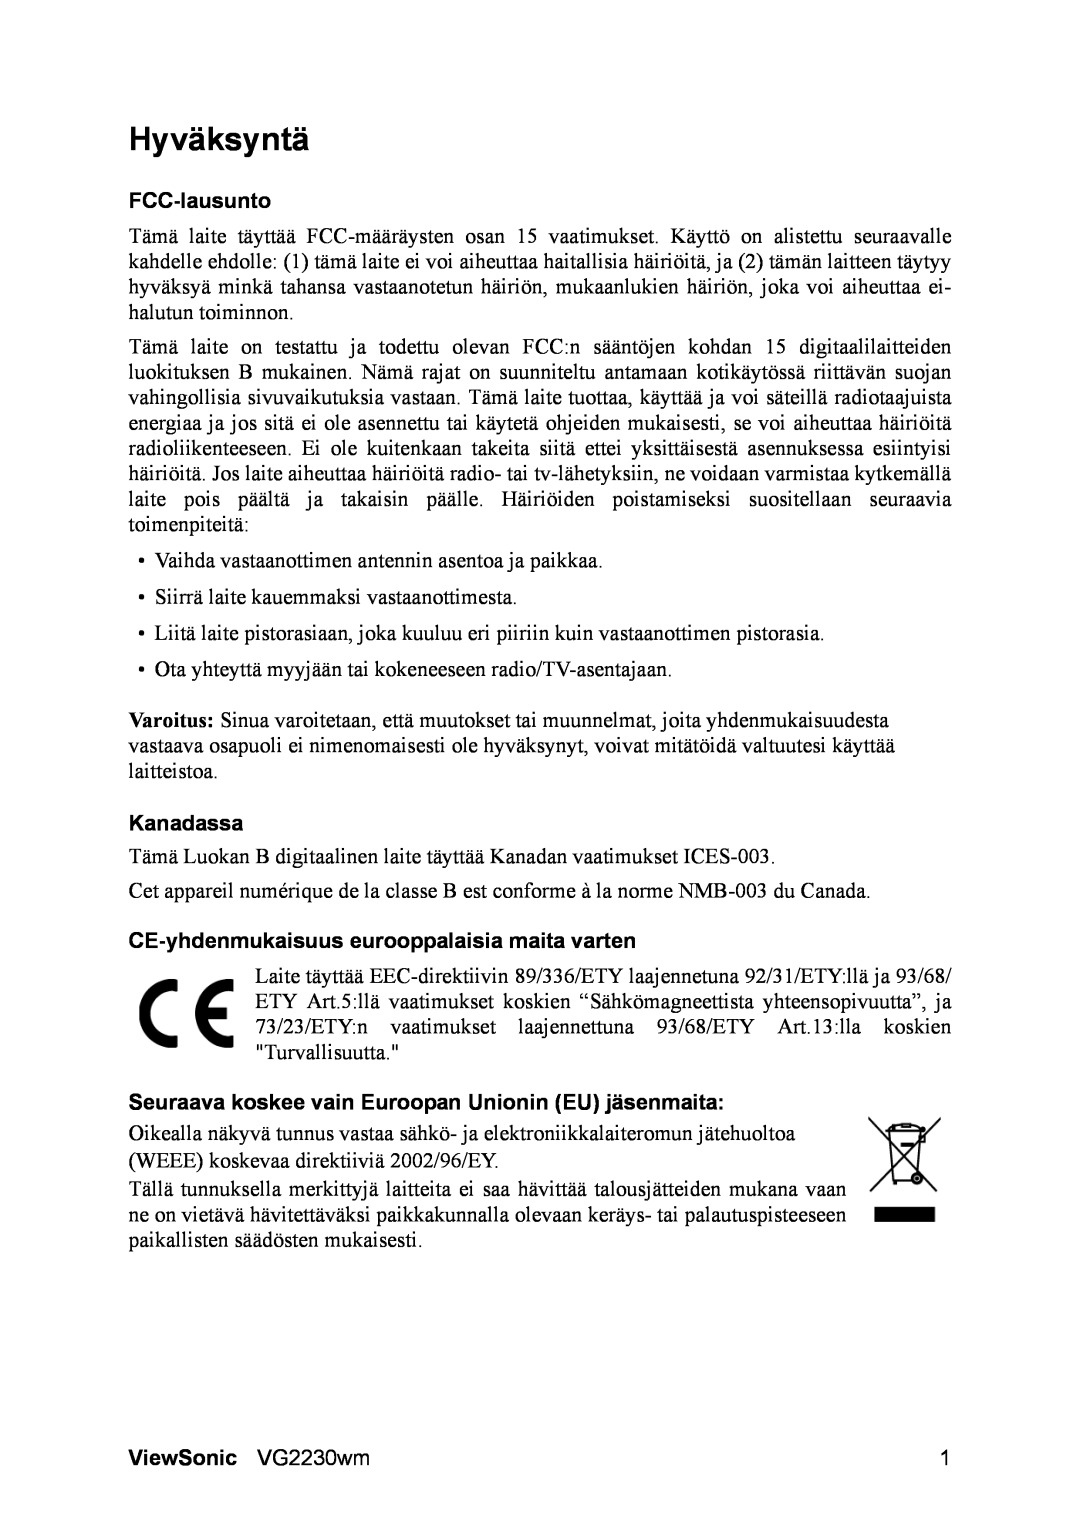 ViewSonic manual Hyväksyntä, FCC-lausunto, Kanadassa, CE-yhdenmukaisuuseurooppalaisia maita varten, ViewSonic VG2230wm 